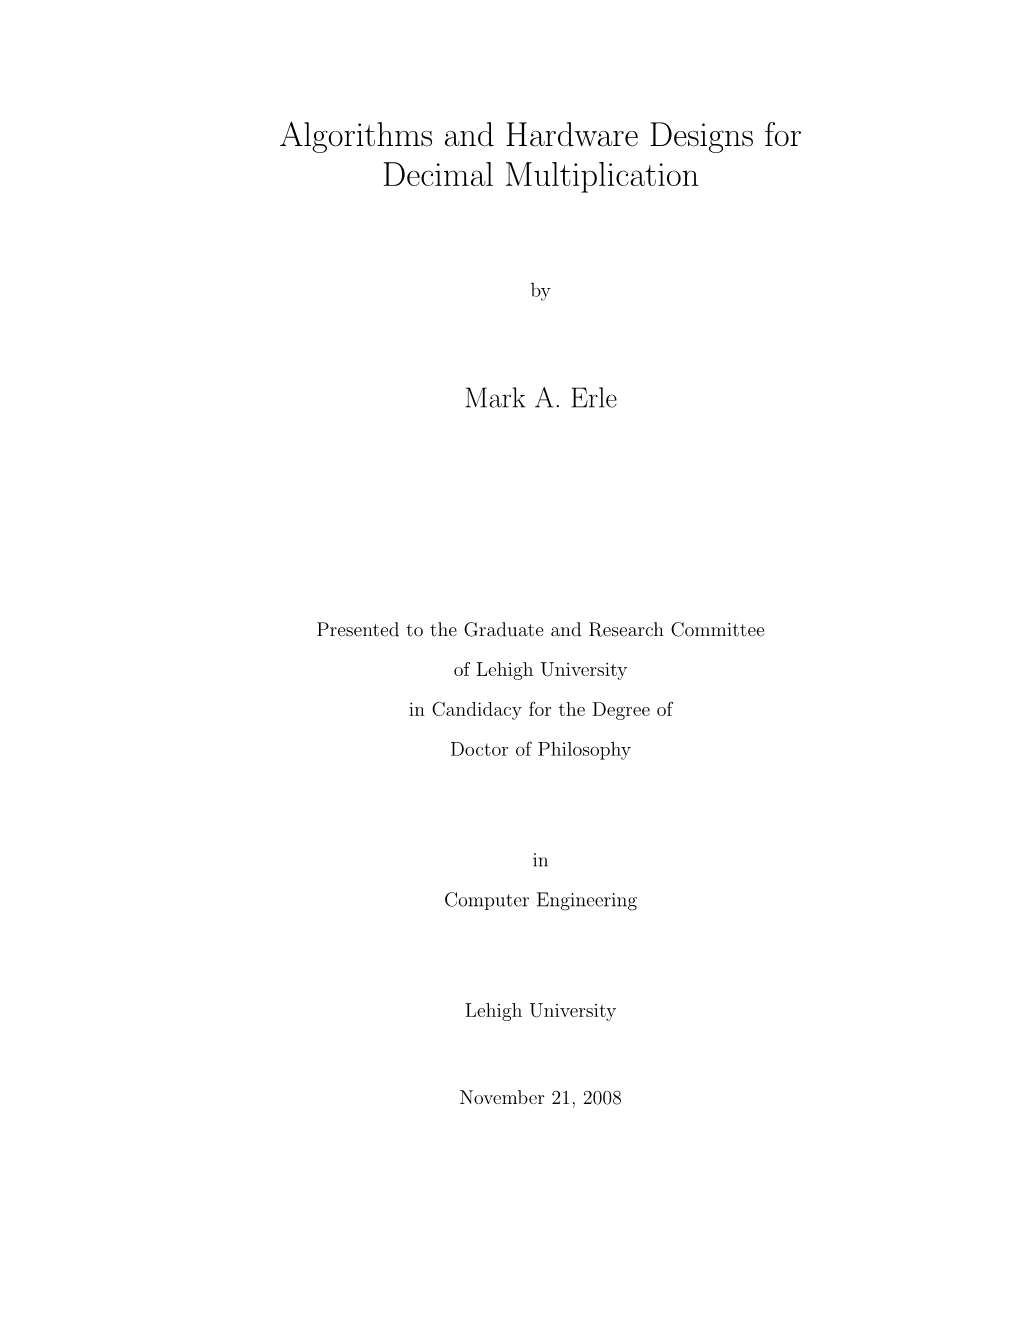 Algorithms and Hardware Designs for Decimal Multiplication